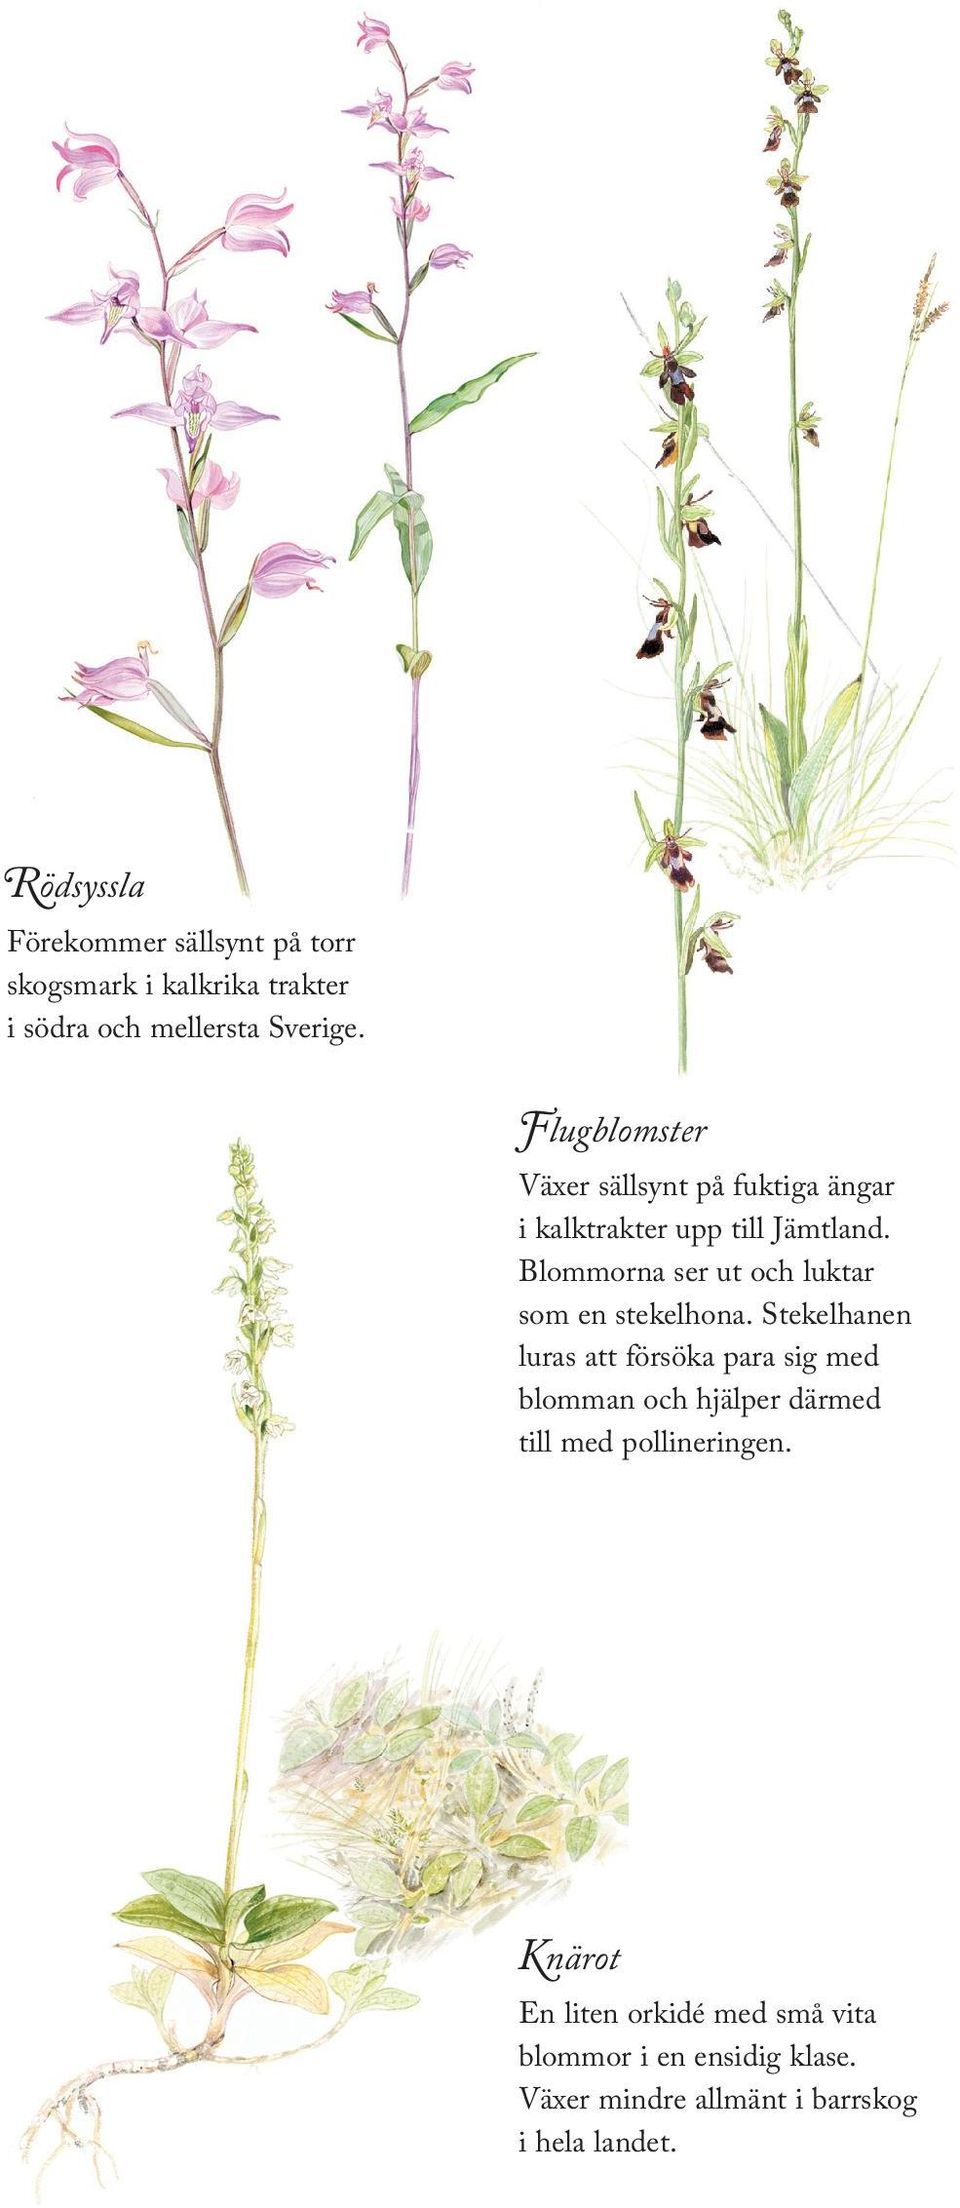 Väldoftande och sällsynt orkidé som växer på ängsmark i kalktrakter i nordvästra Sverige. Kärrknipprot Förekommer sällsynt i kalkkärr och på fuktängar. Är mer vanlig på Öland och Gotland.